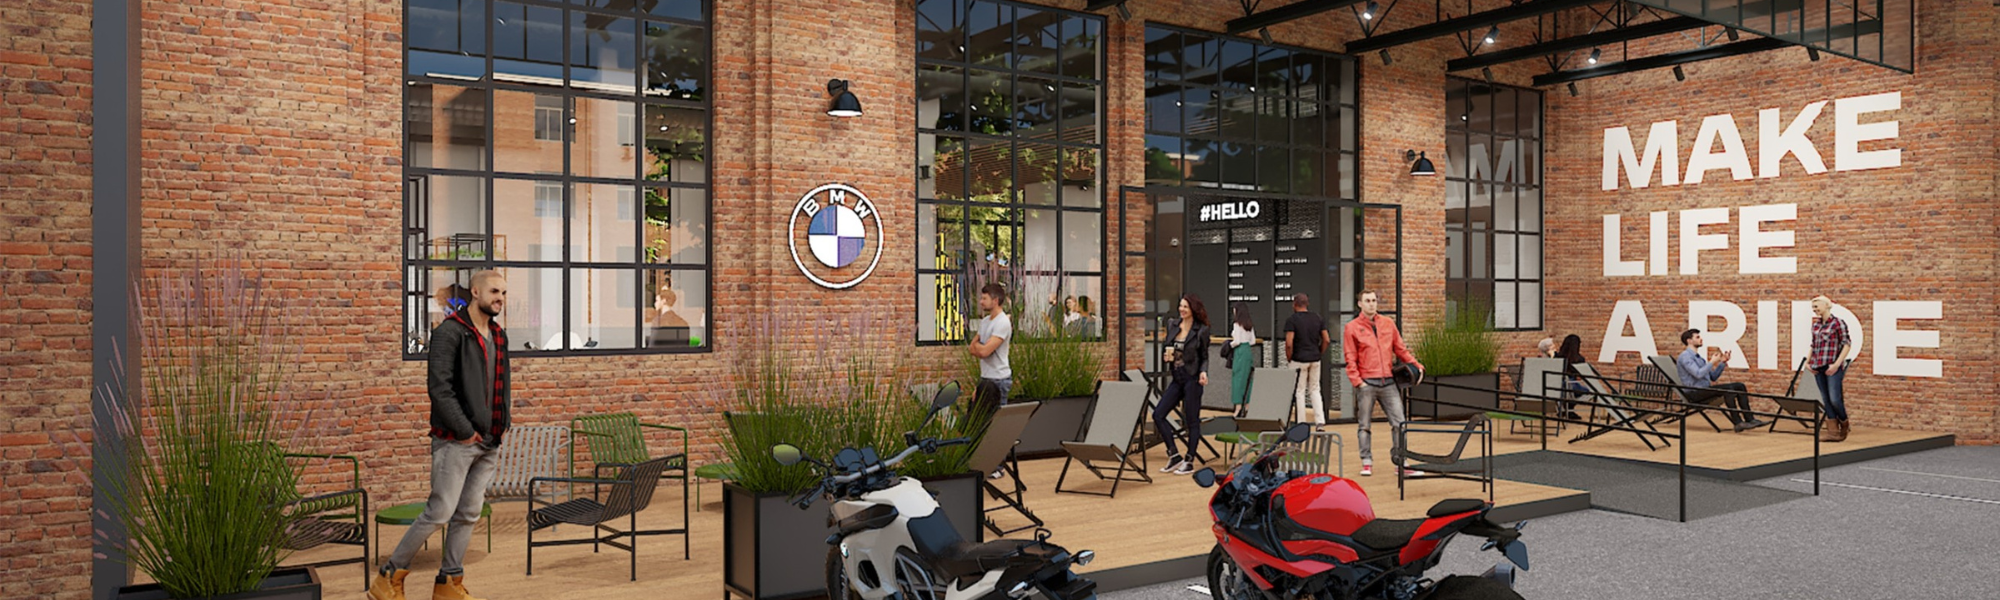 BMW Motorrad Welt: im Gebäude sieht man unterschiedliche Menschen, die sitzen oder stehen sowie verschiedene Motorräder.